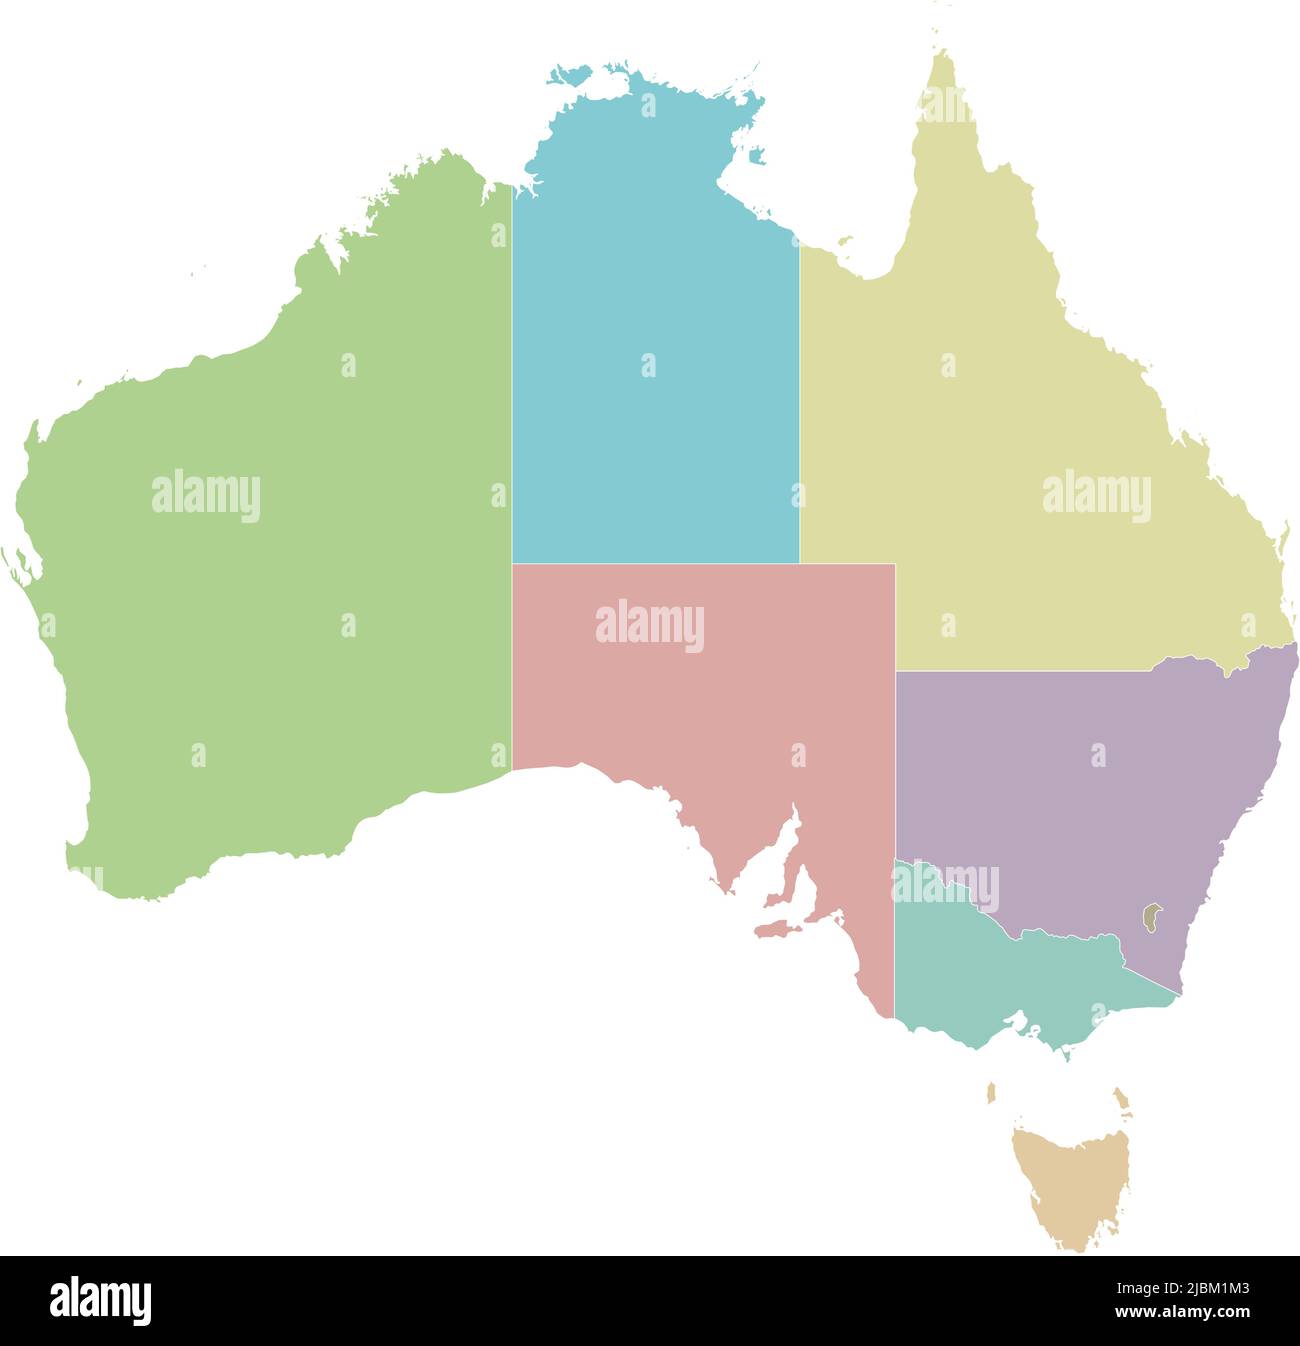 Mappa vettoriale vuota dell'Australia con regioni o territori e divisioni amministrative. Livelli modificabili e chiaramente etichettati. Illustrazione Vettoriale